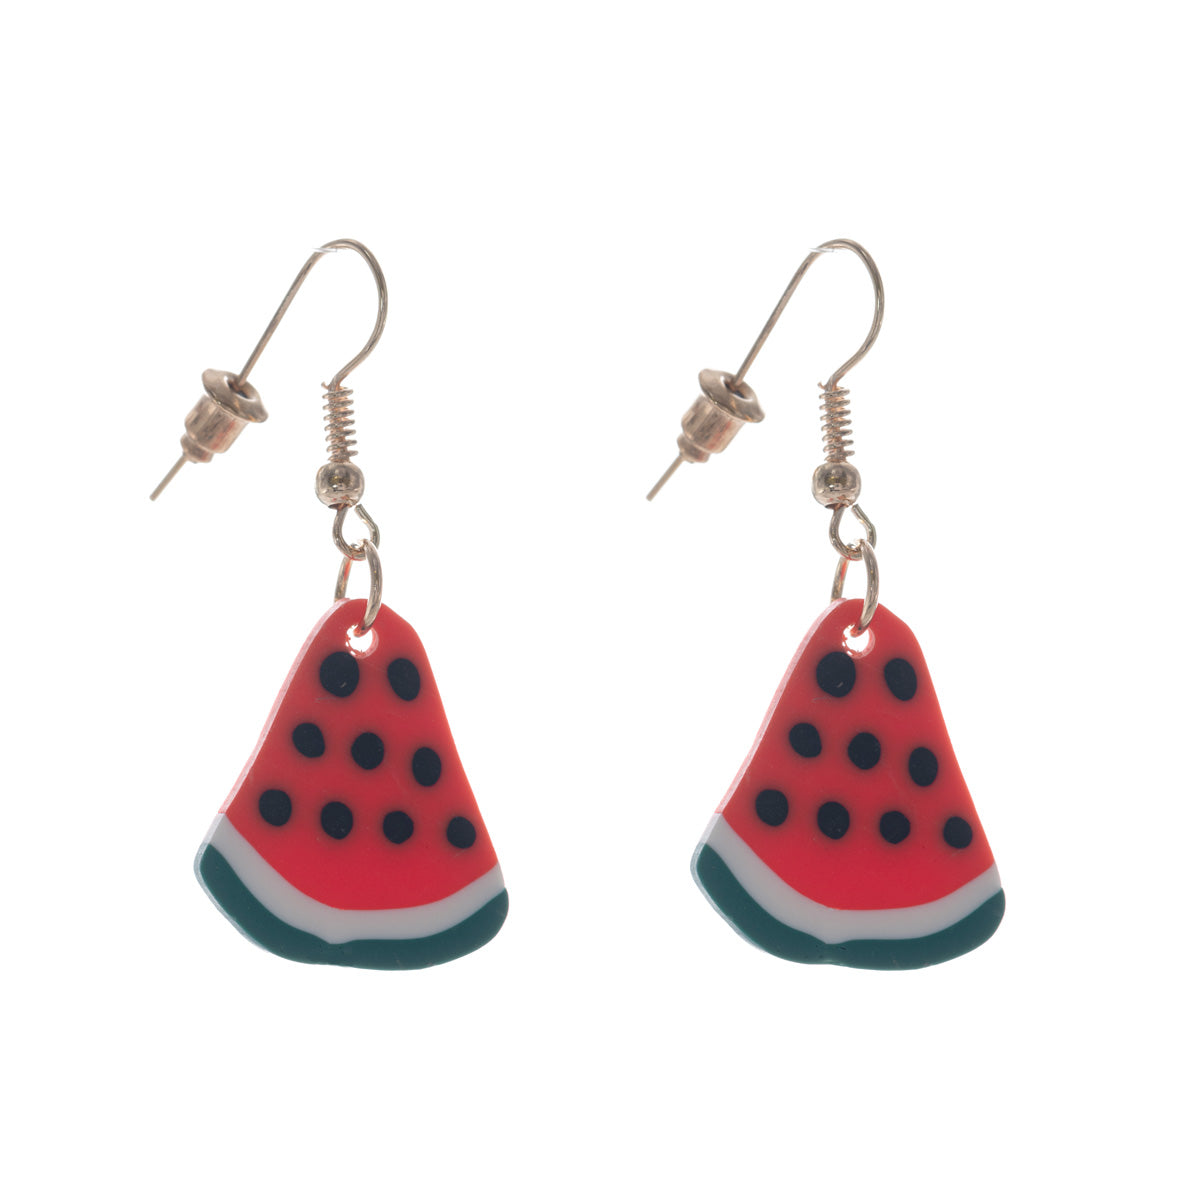 Melon's earrings